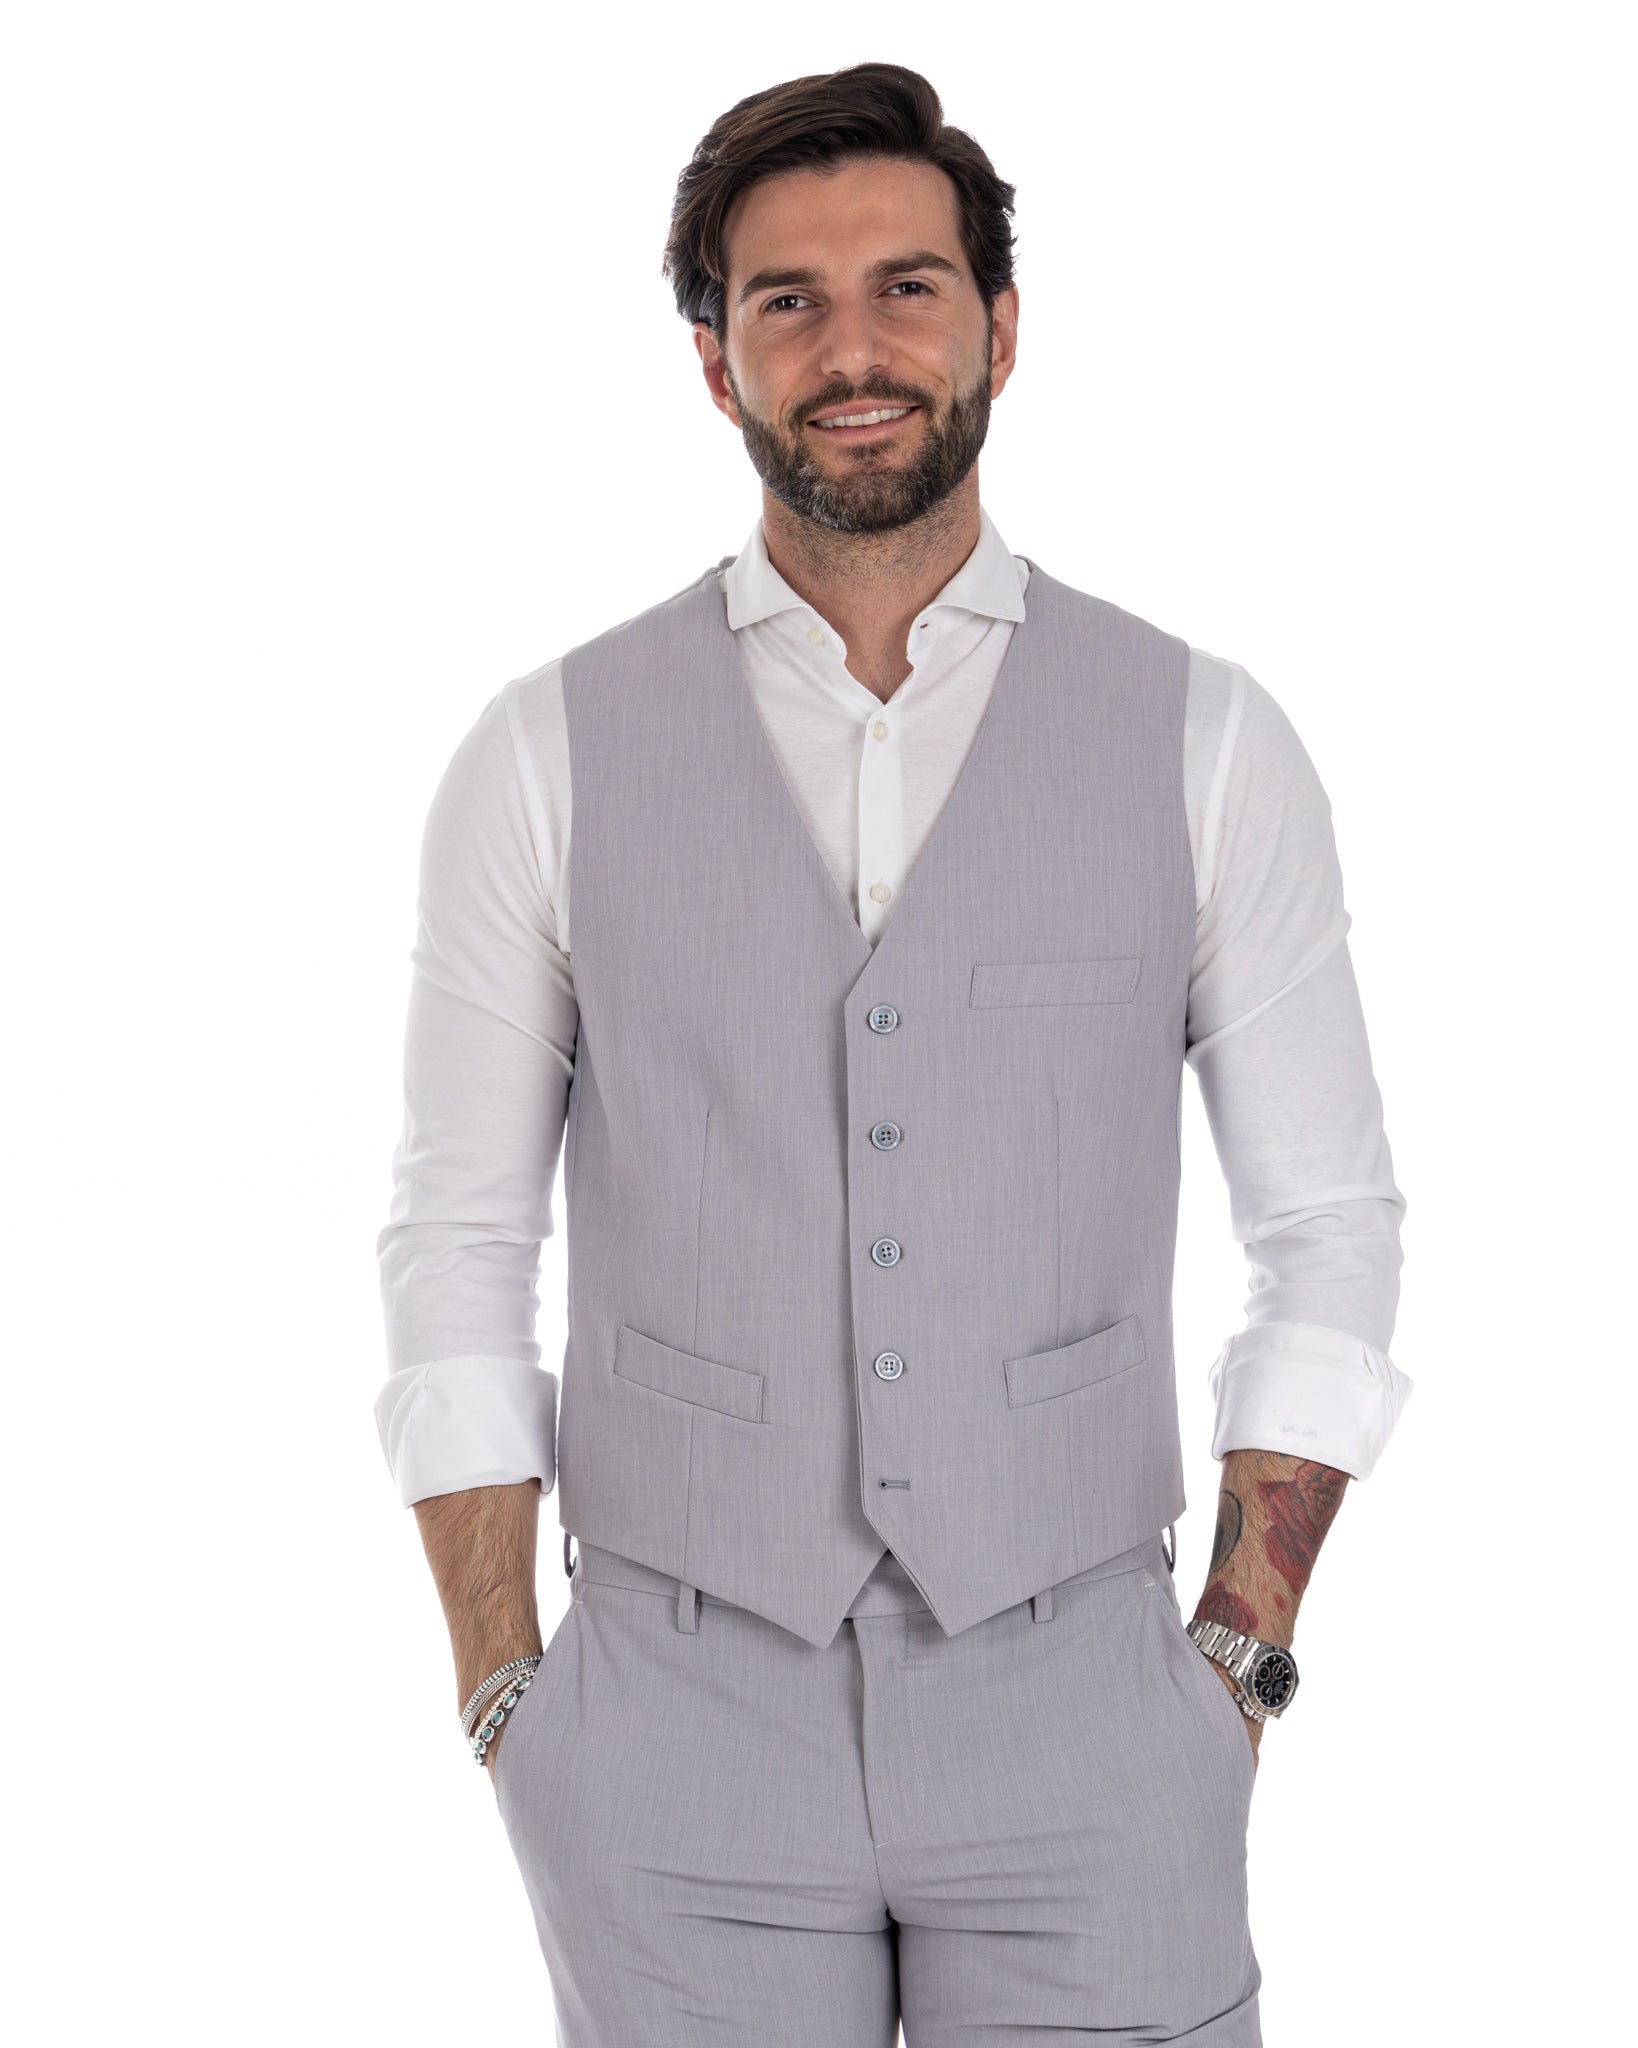 Dresden - light gray single-breasted waistcoat